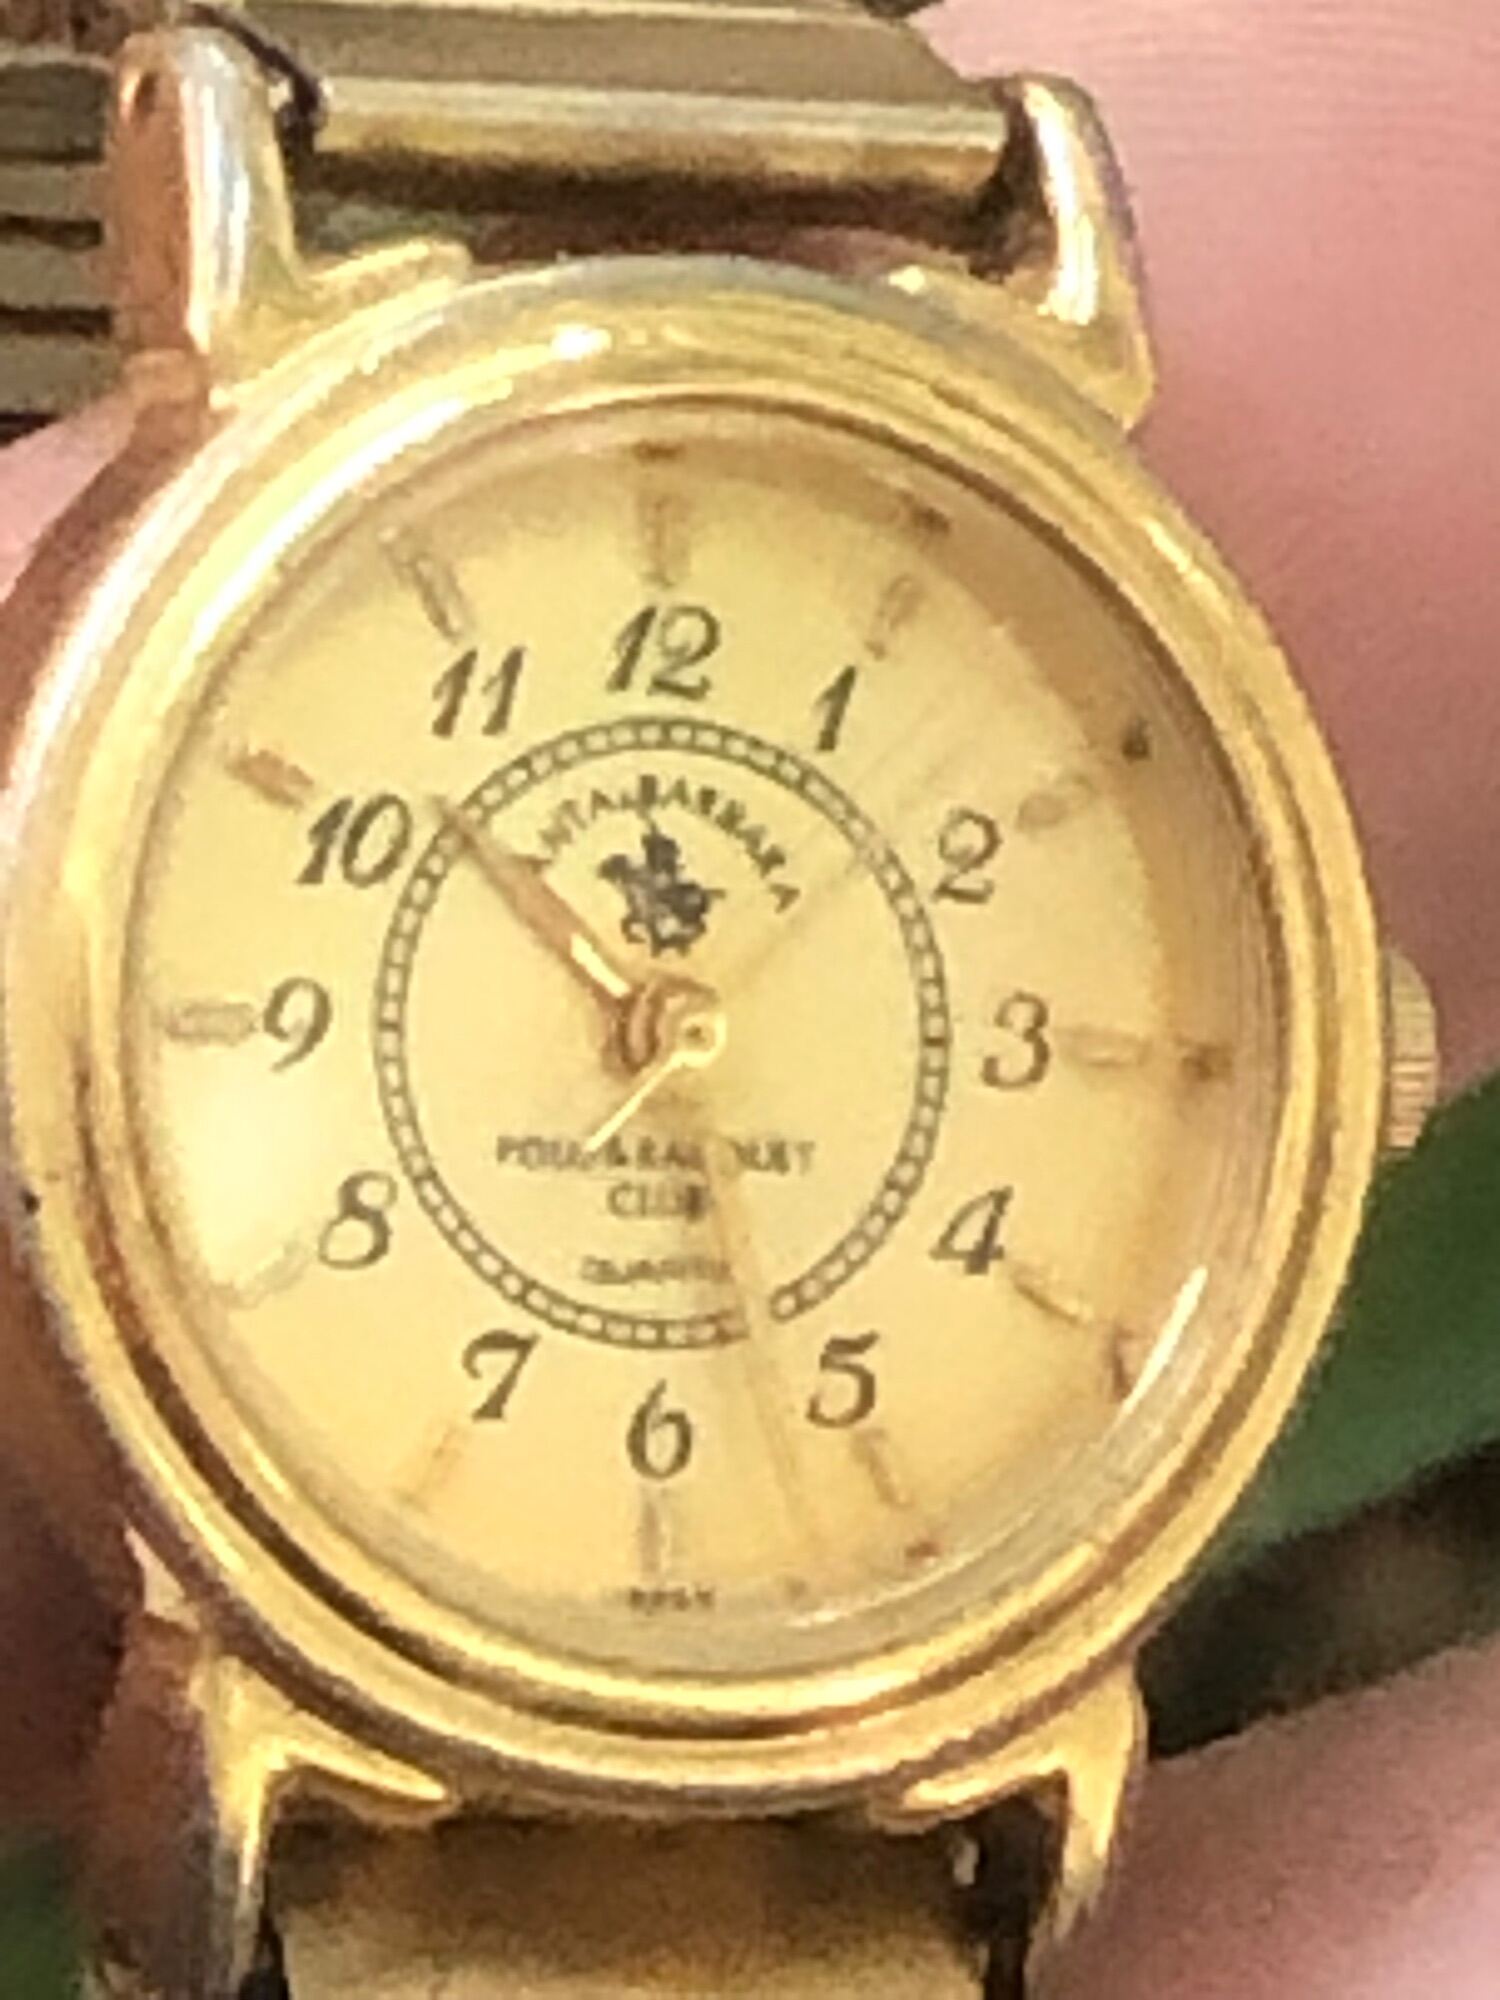 Đồng hồ nữ nhỏ vàng hiệu Santa barbara dây chun